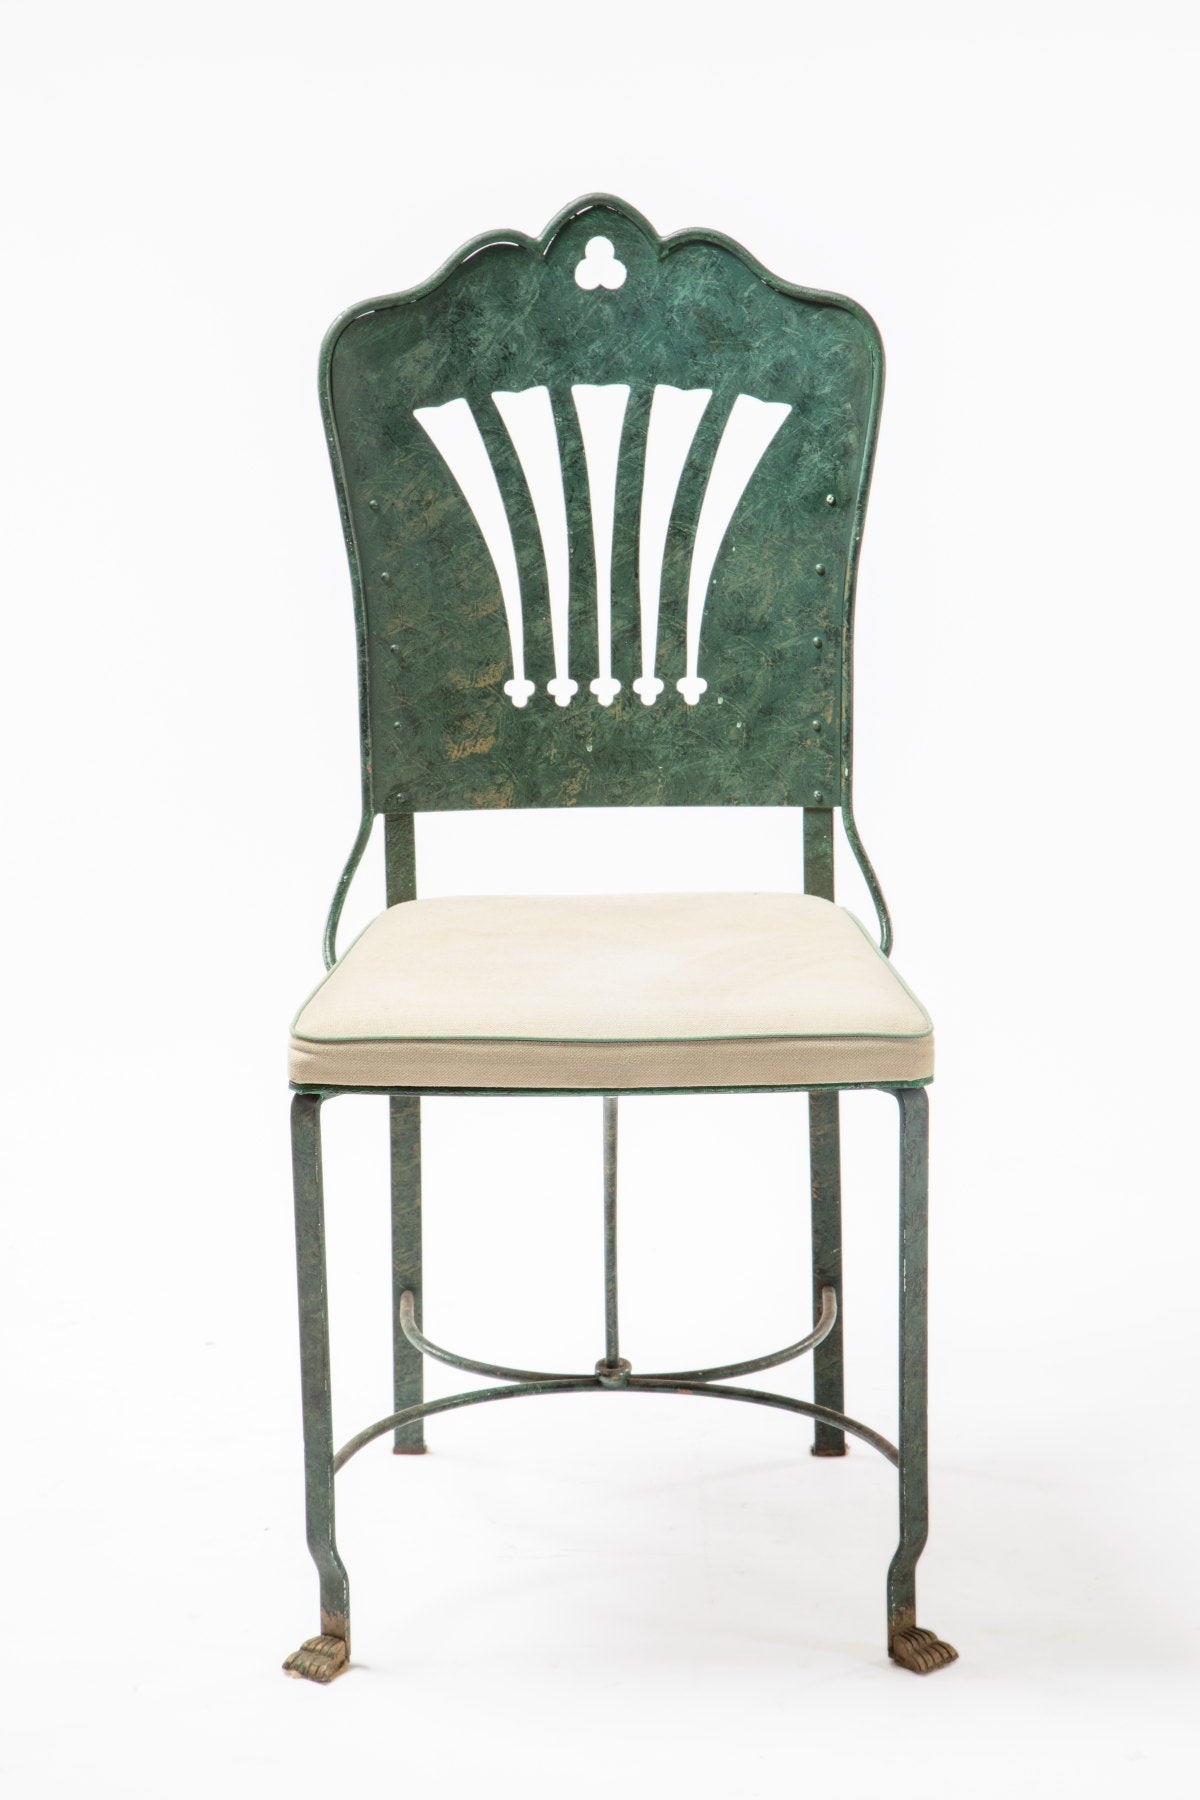 Quattro sedie ferro battuto verdi